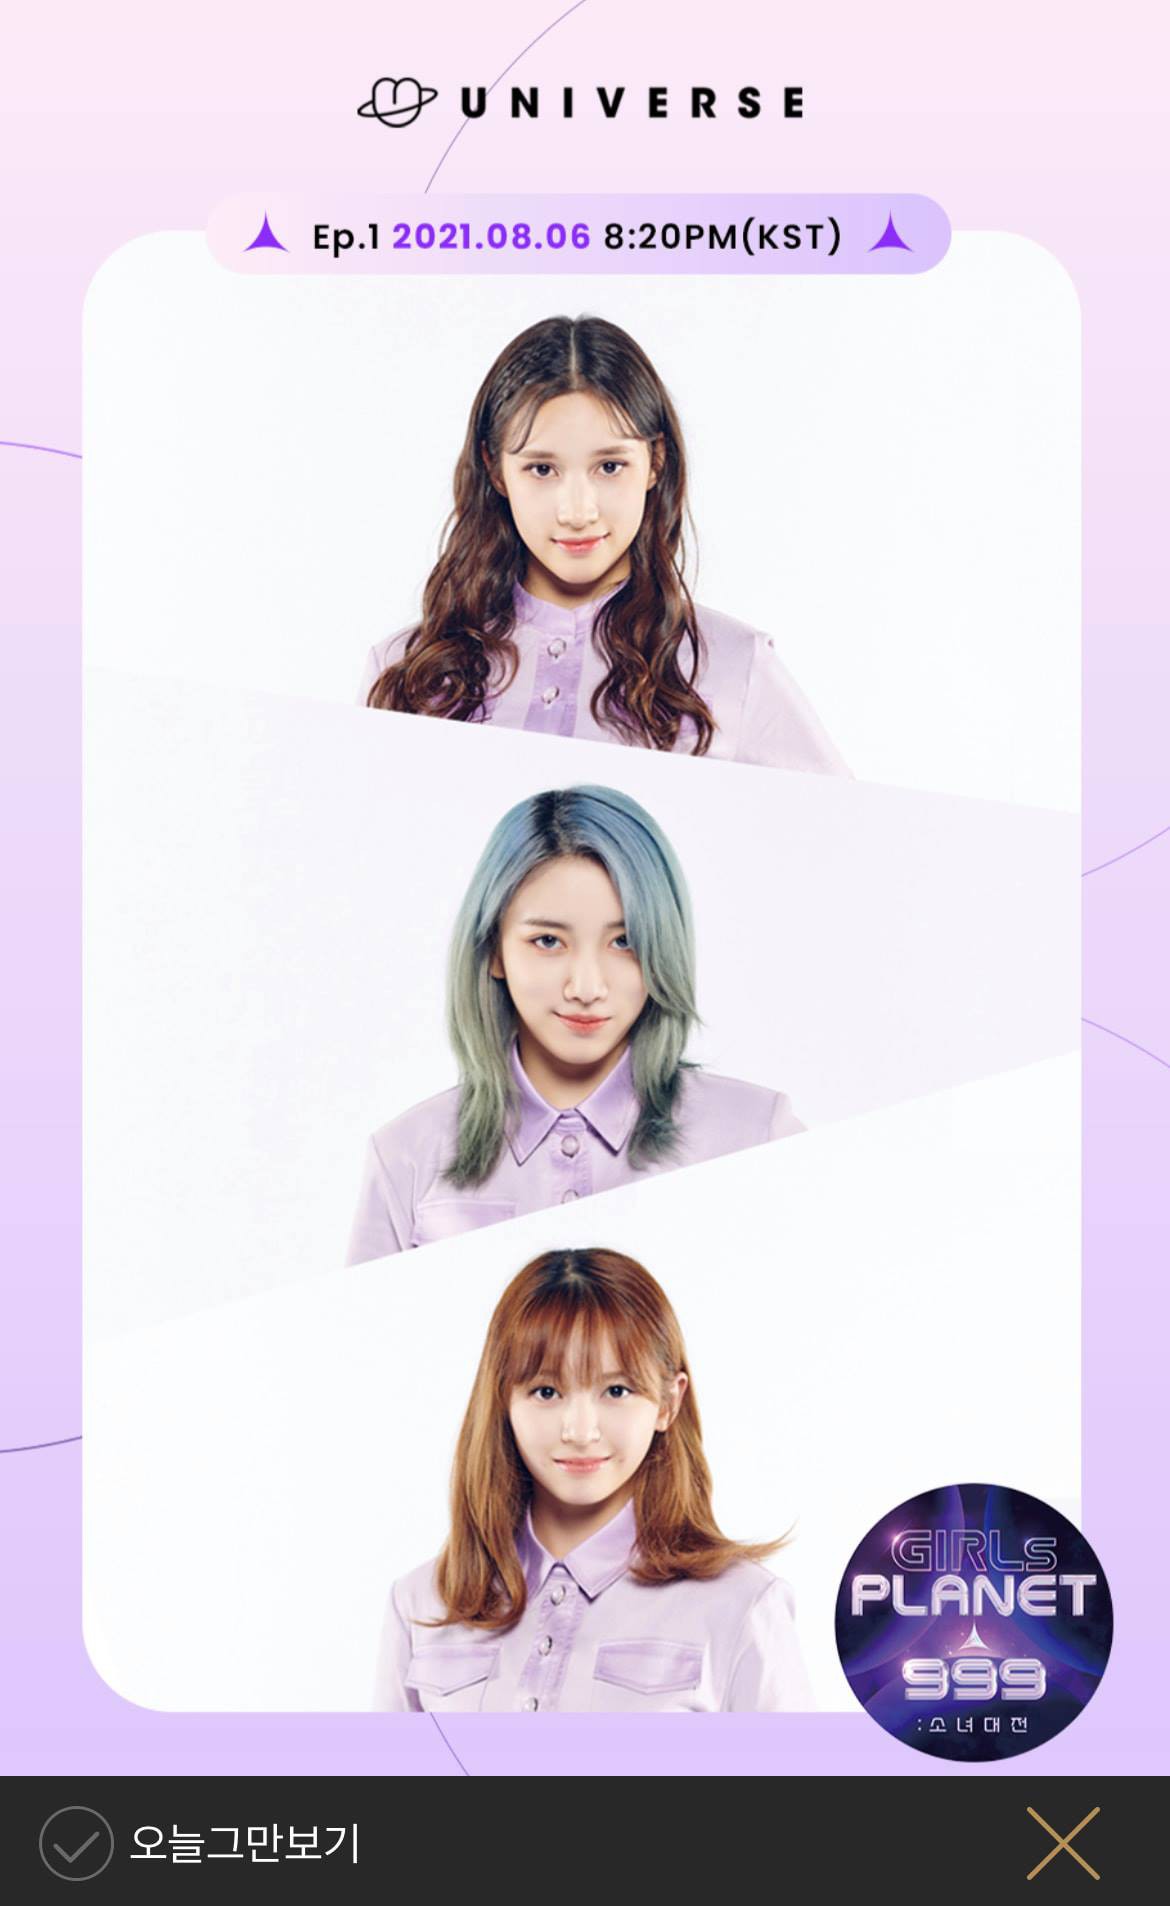 Show tuyển tú của Hàn Quốc - GIRLS PLANET 999 thông báo về phương thức bỏ phiếu bình chọn thí sinh, cam kết minh bạch